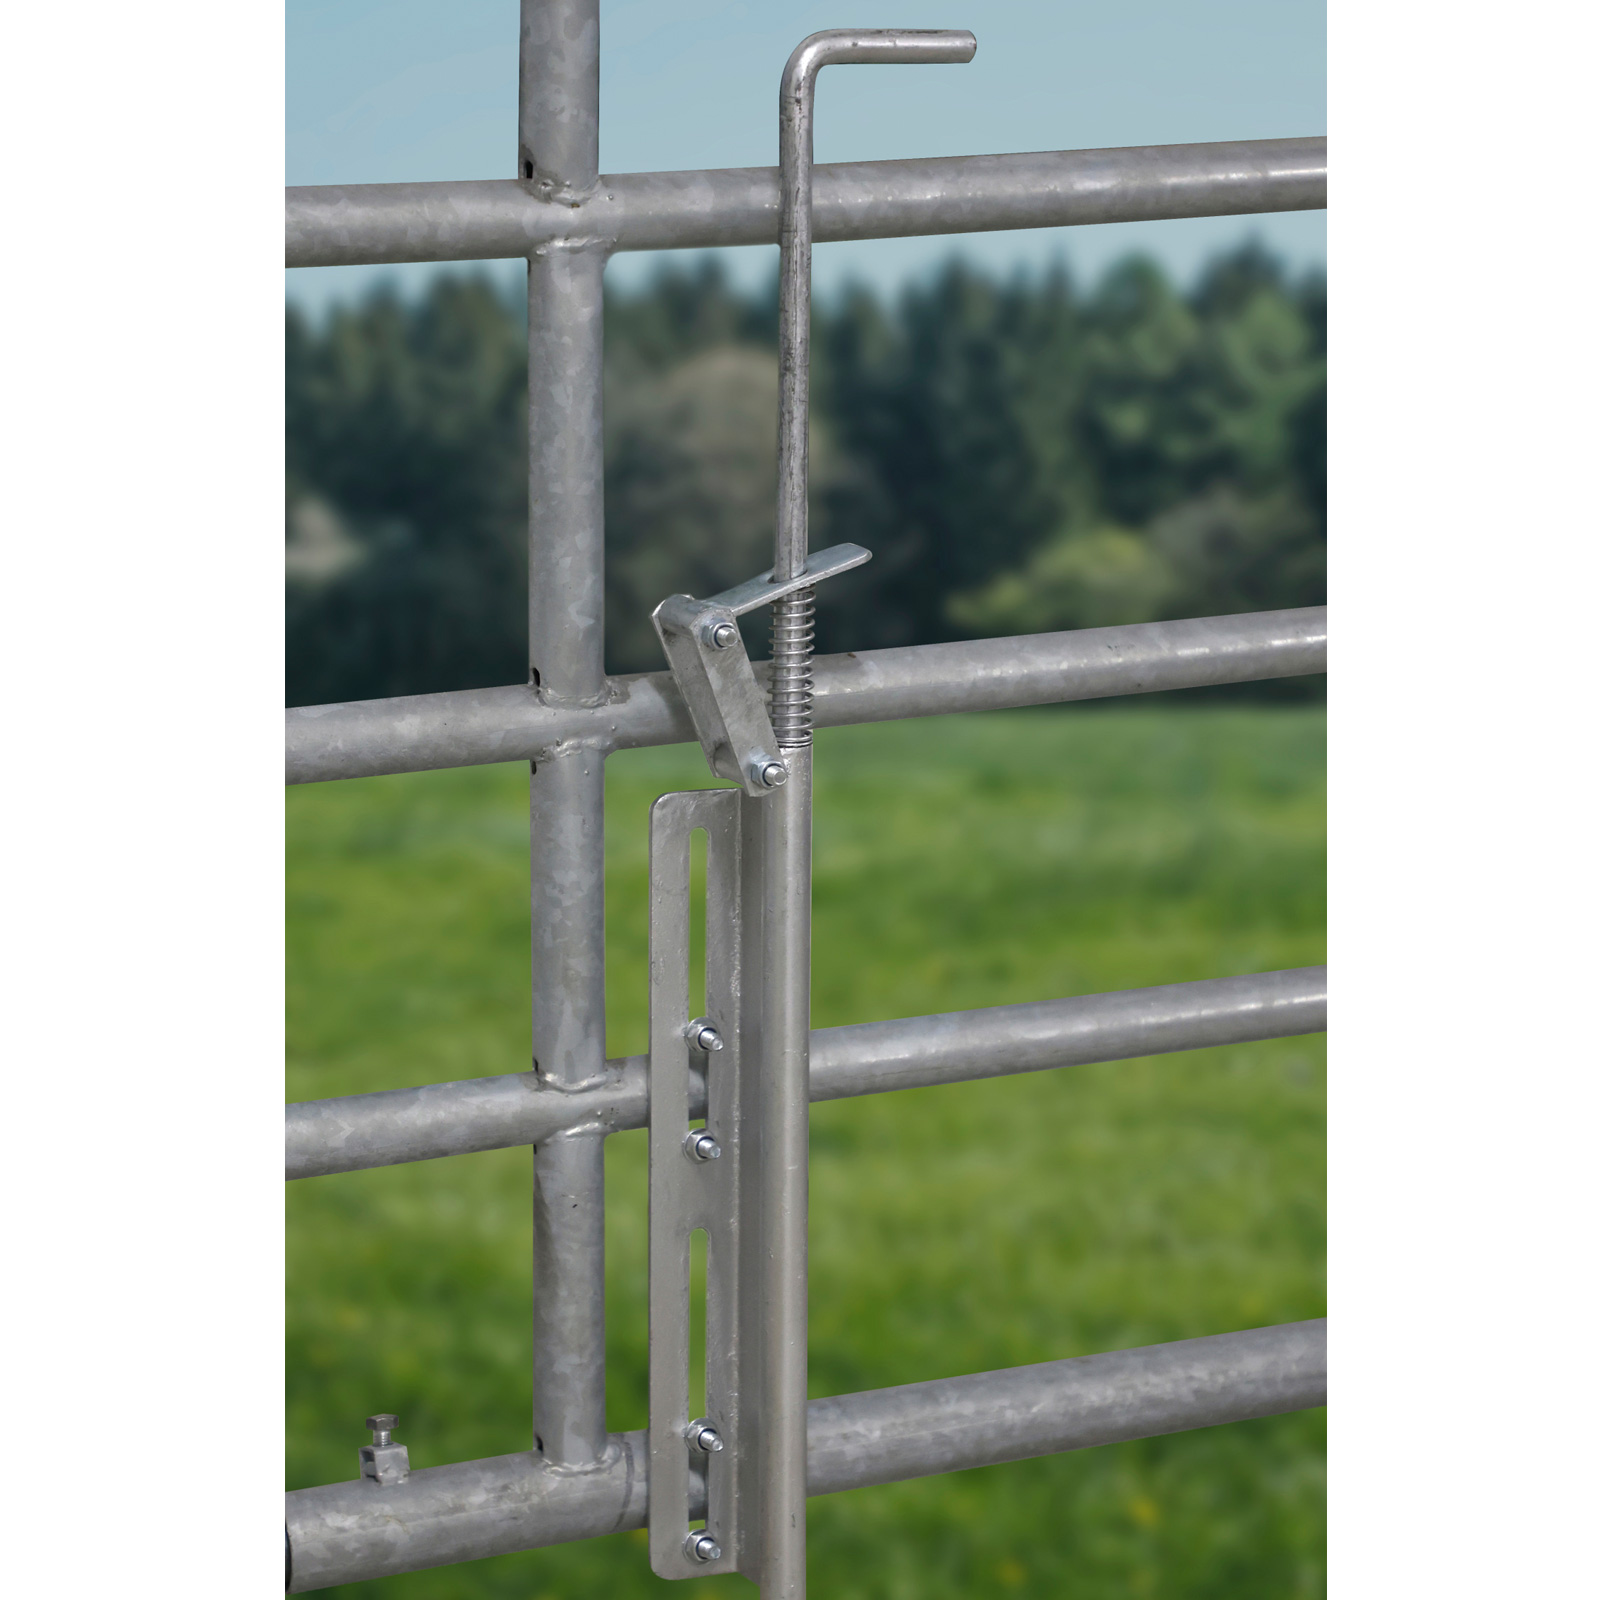 Locking pin for pasture gates